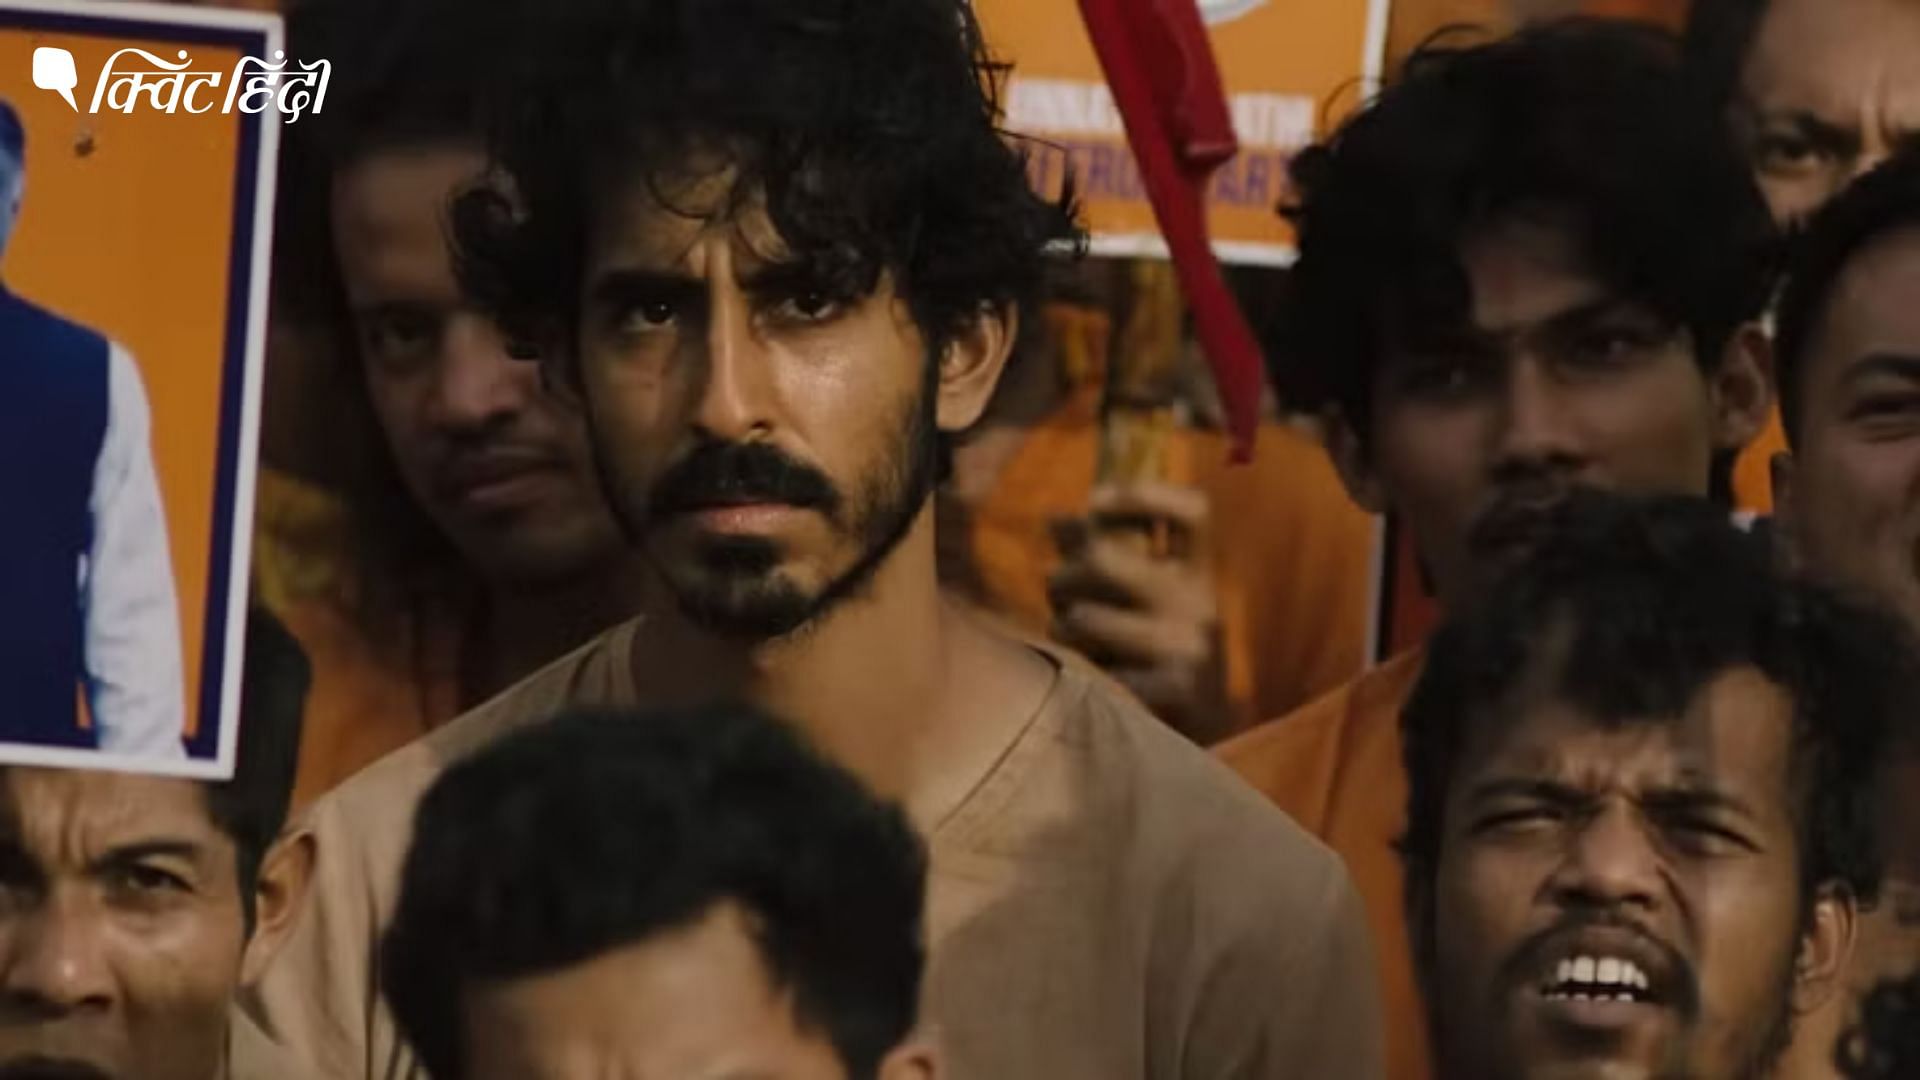 <div class="paragraphs"><p>भारत में देव पटेल की फिल्म 'मंकी मैन' की रिलीज क्यों हुई पोस्टपोन?- यहां समझें</p></div>